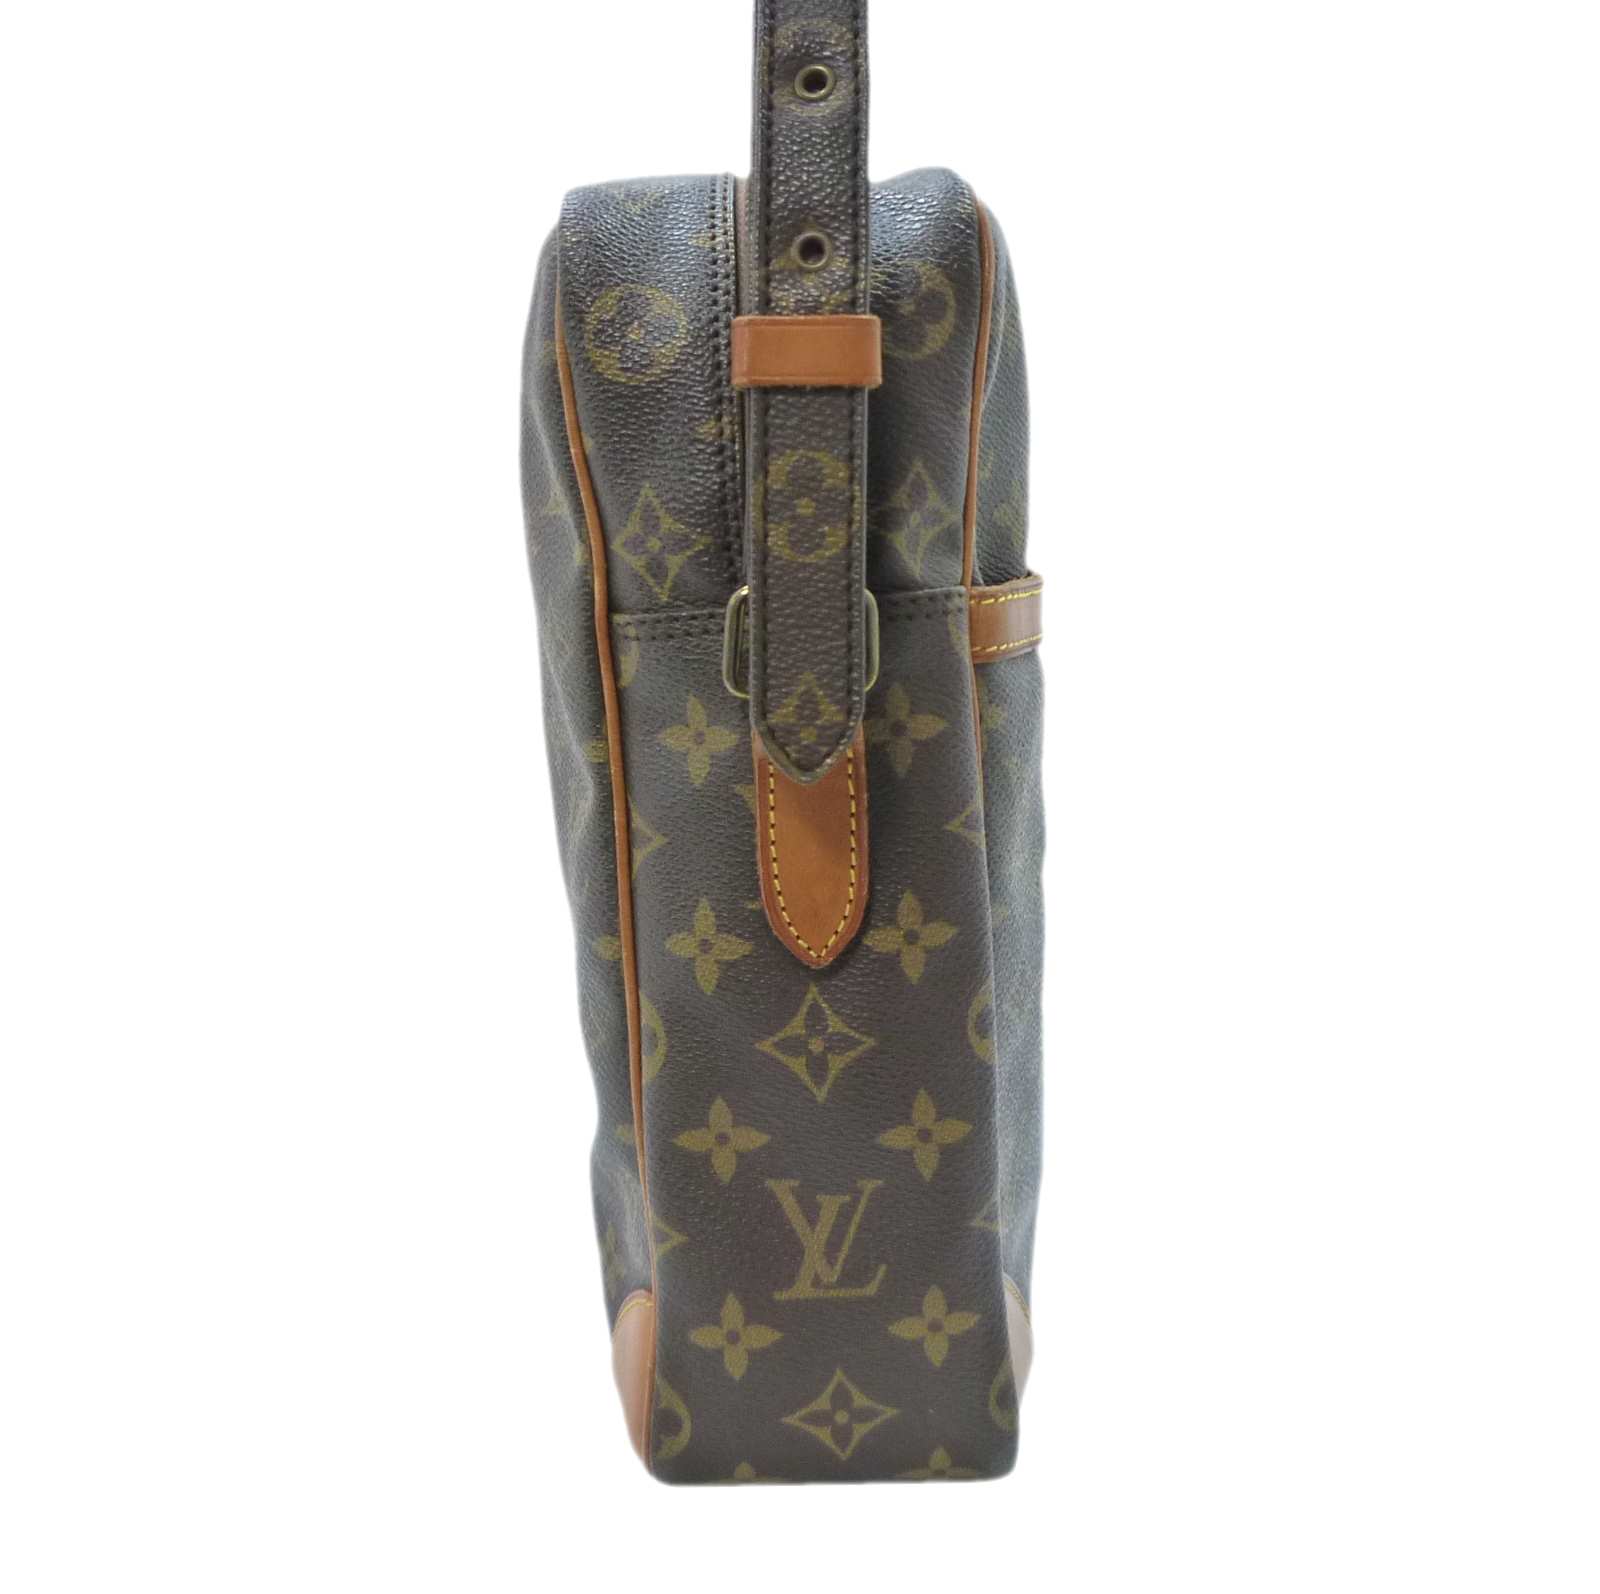 ルイヴィトン ショルダーバッグ 鞄 M45262 ダヌーブGM モノグラムストラップ113-130cm